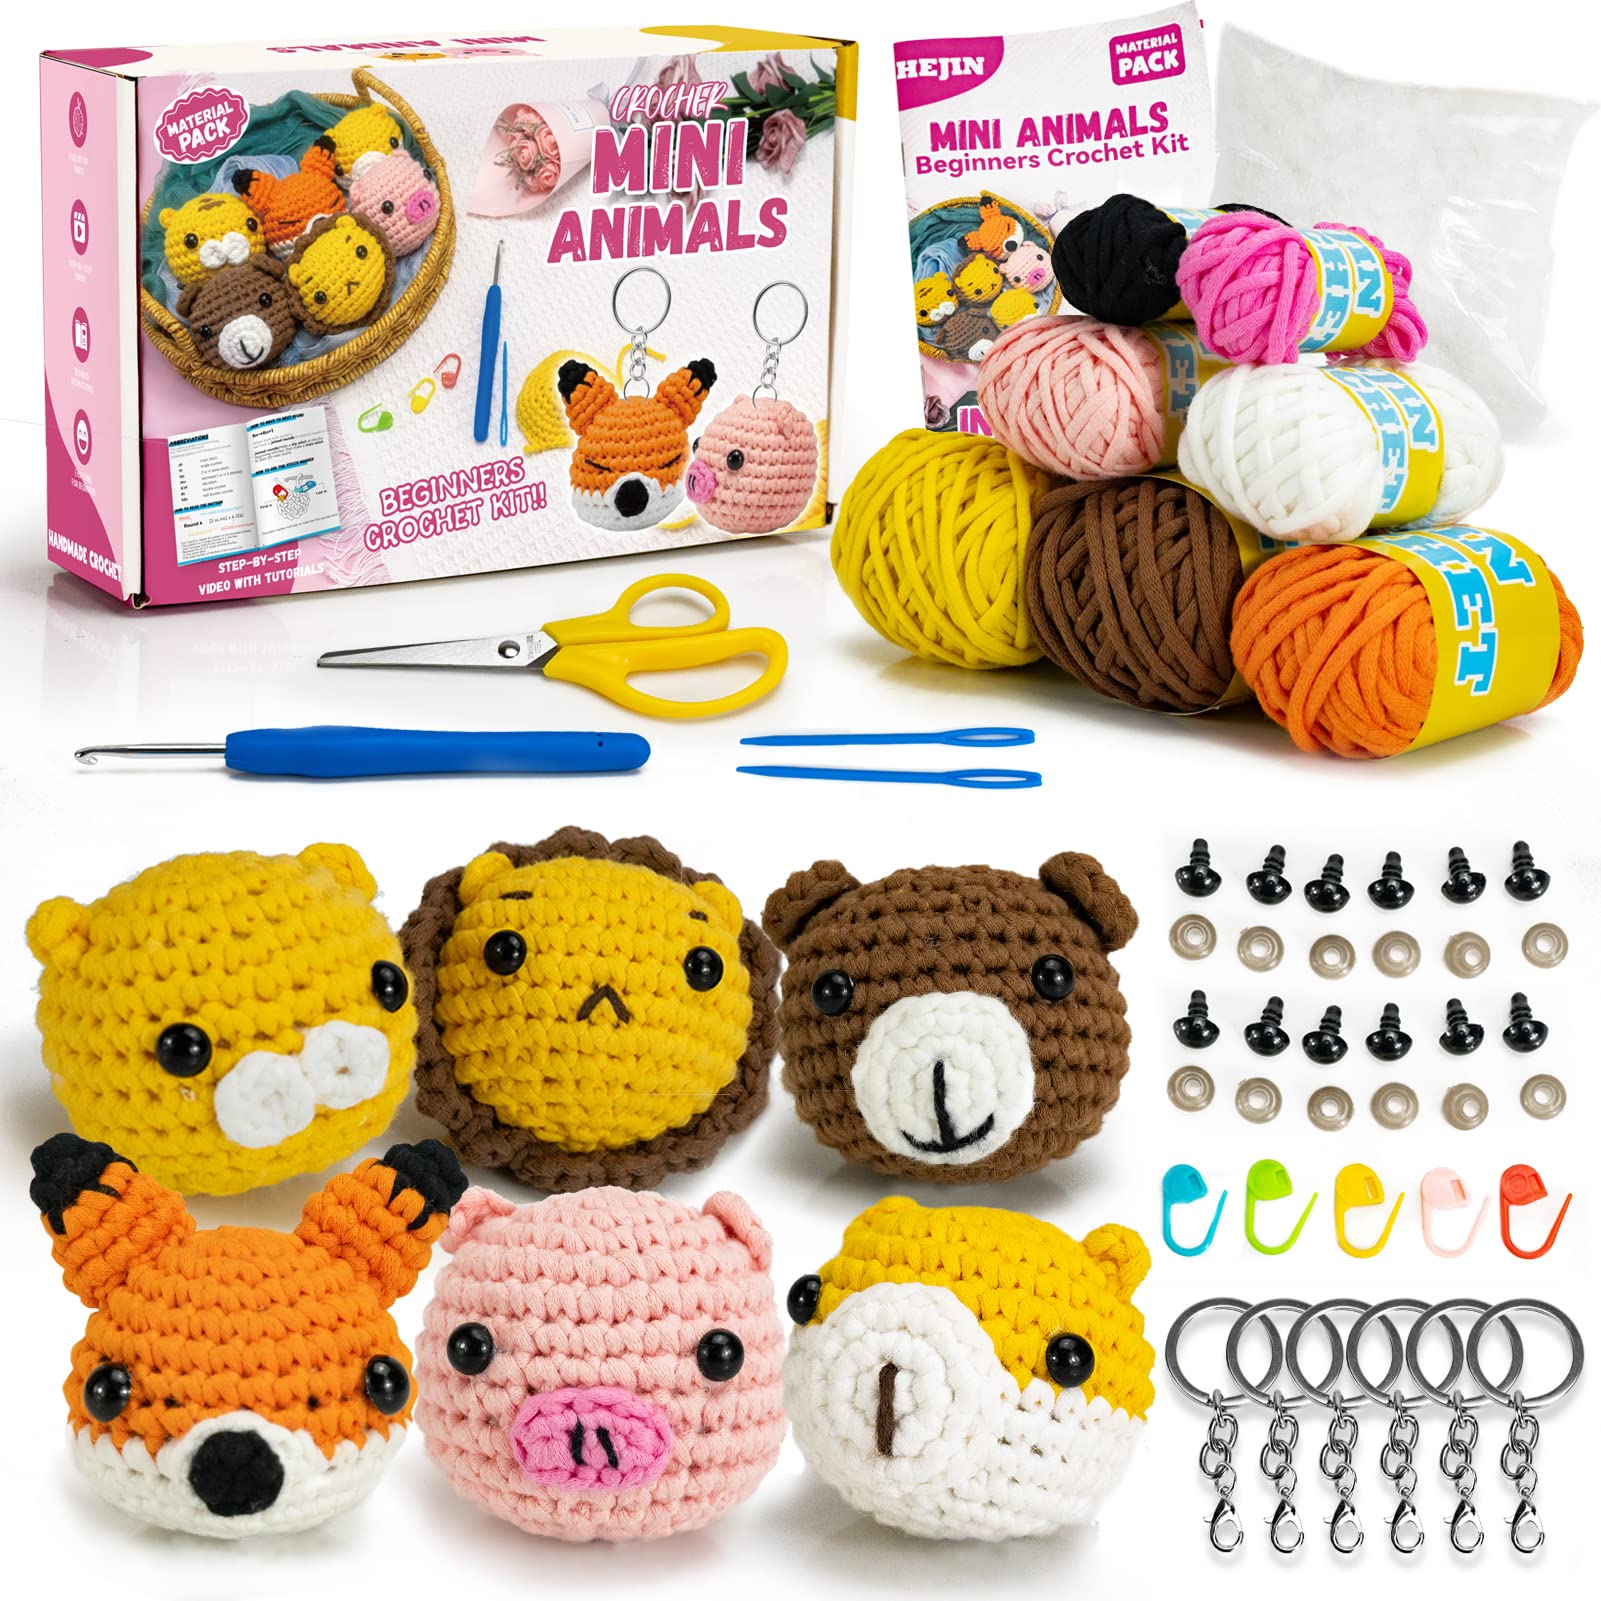 Crochet Kit for Beginners,Crochet Kit for Adults Kids Beginners, Other